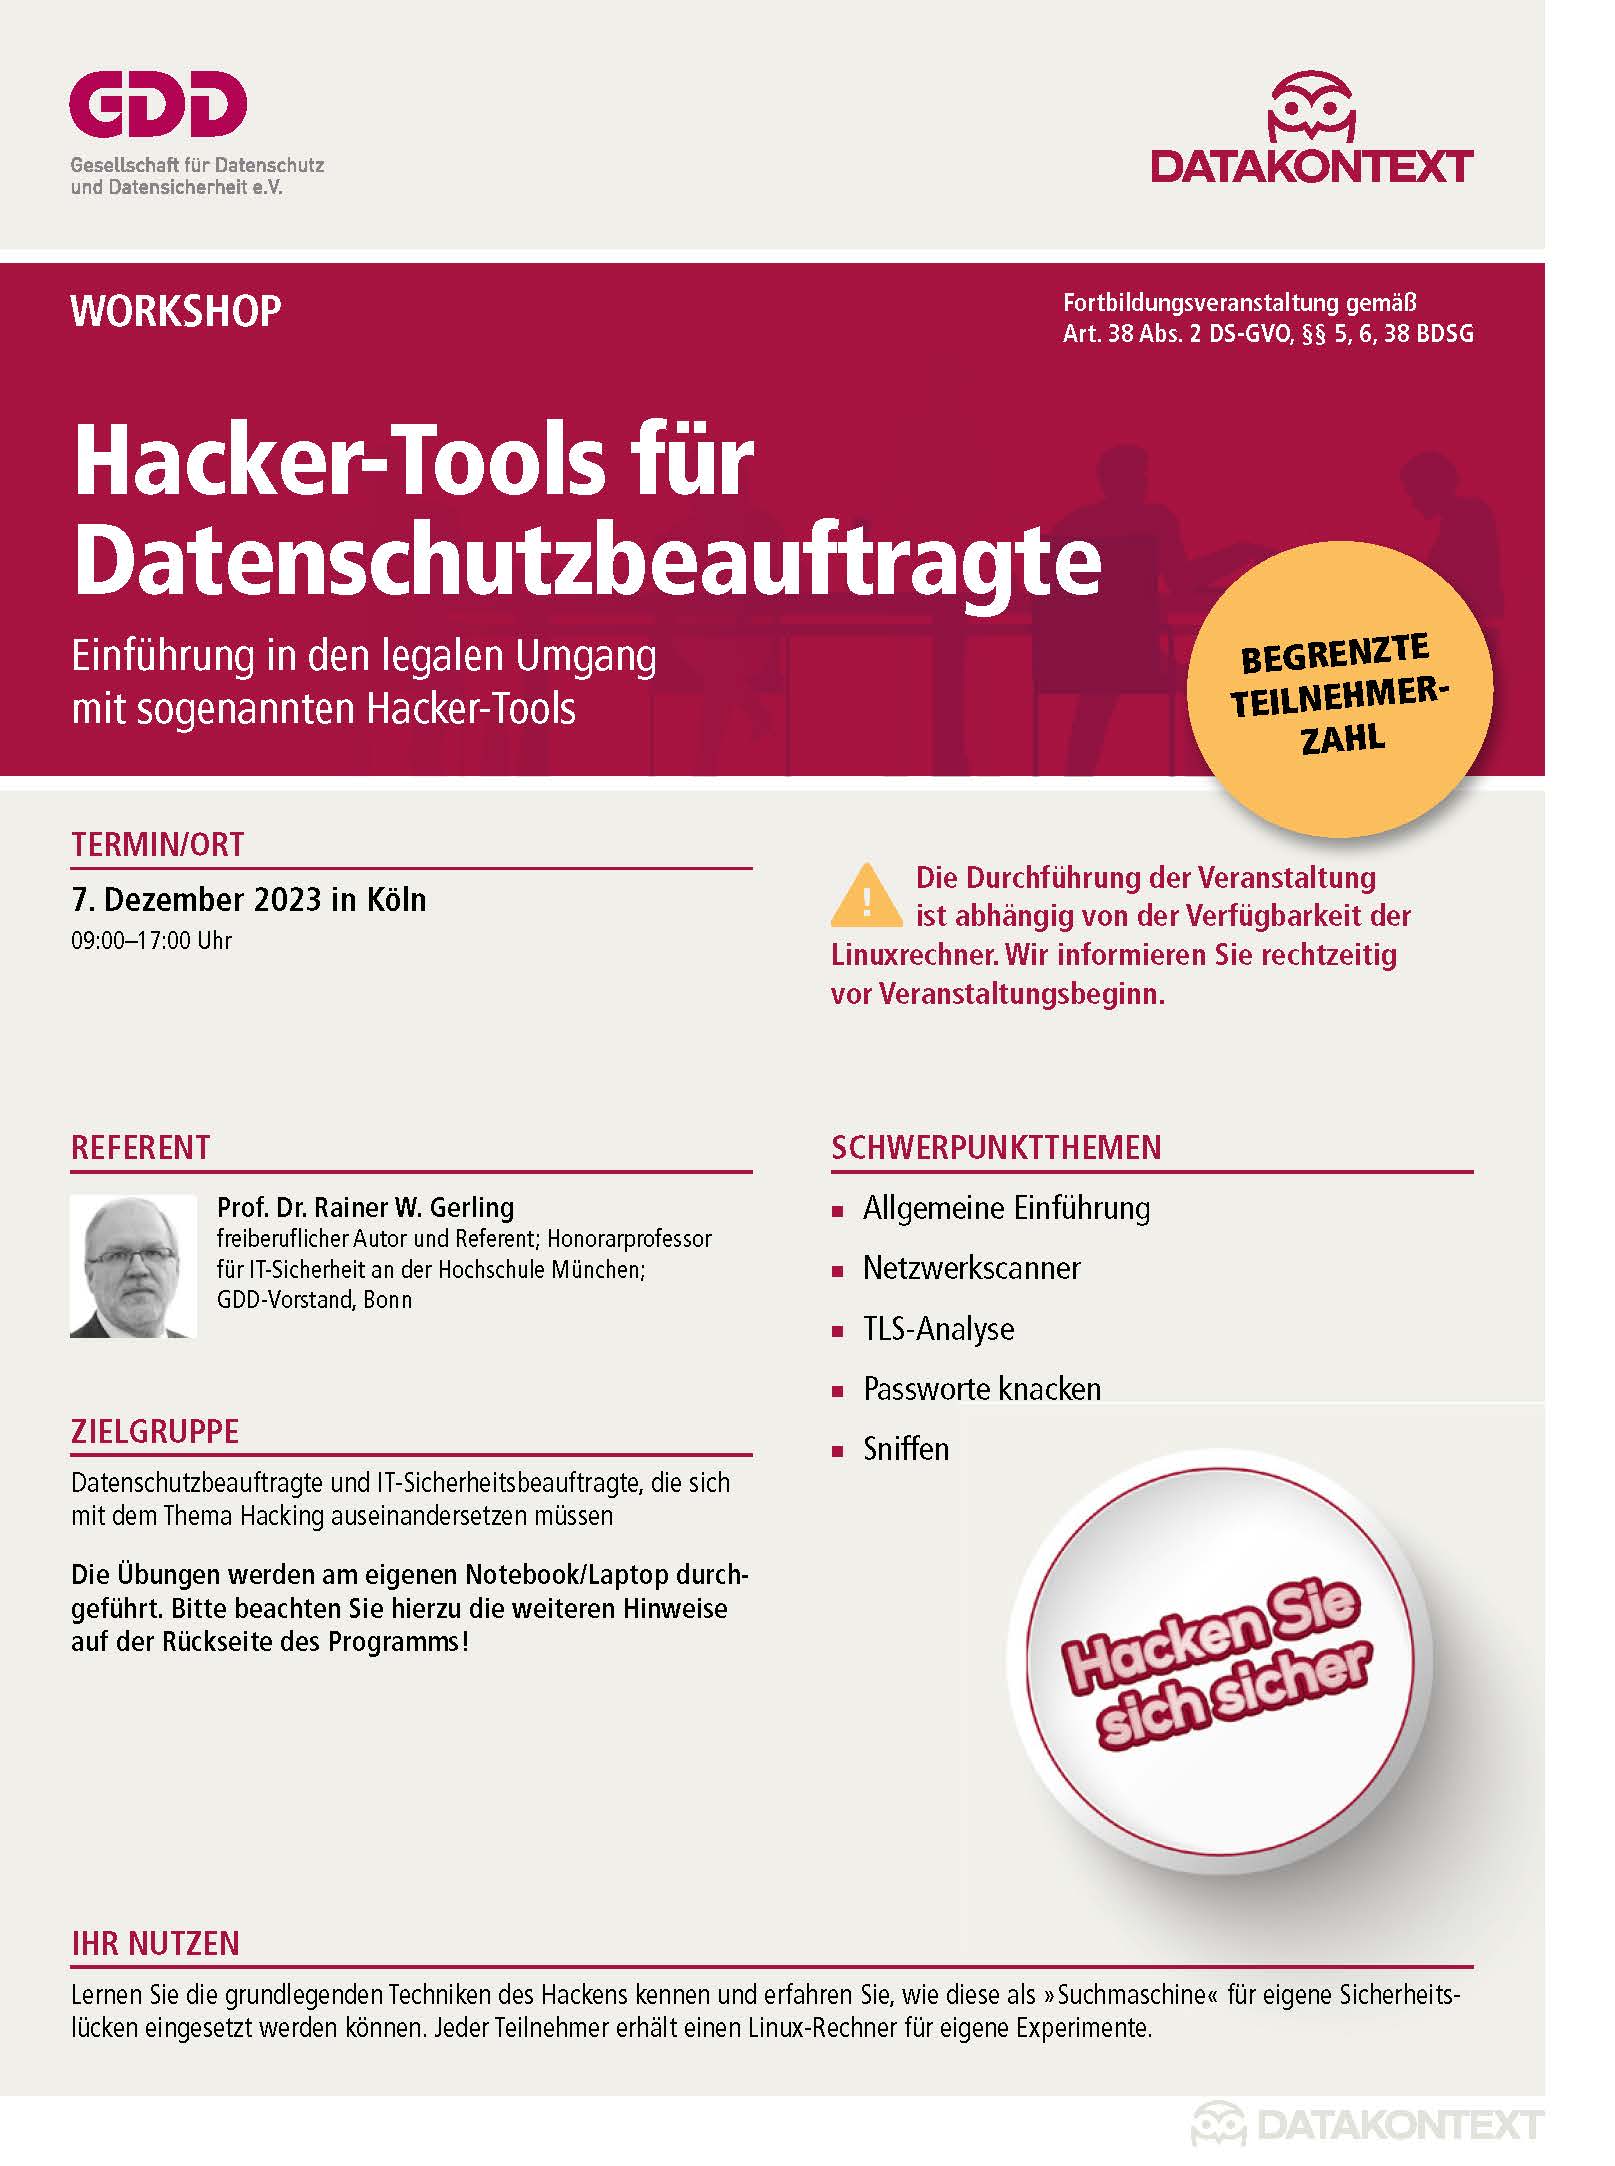 Hacker-Tools für Datenschutzbeauftragte